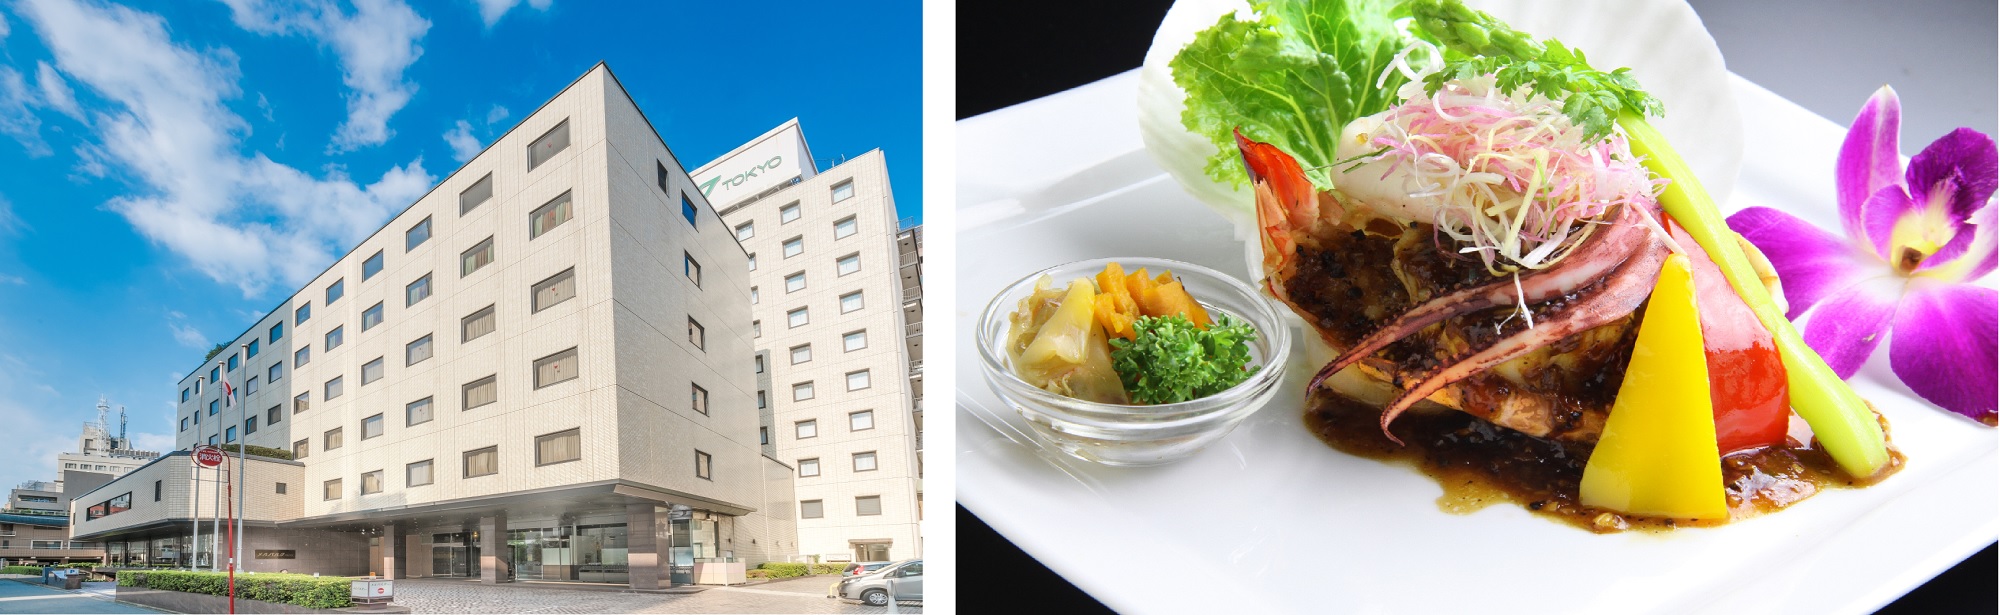 平成最後の「芝大神宮“だらだら祭り”」をホテル メルパルク東京で楽しむ
「メルパルクで過ごす。だらだらキャンペーン」実施！
～お得な長期ステイ、レイトチェックアウト、和・洋・中の生姜メニューが登場～
